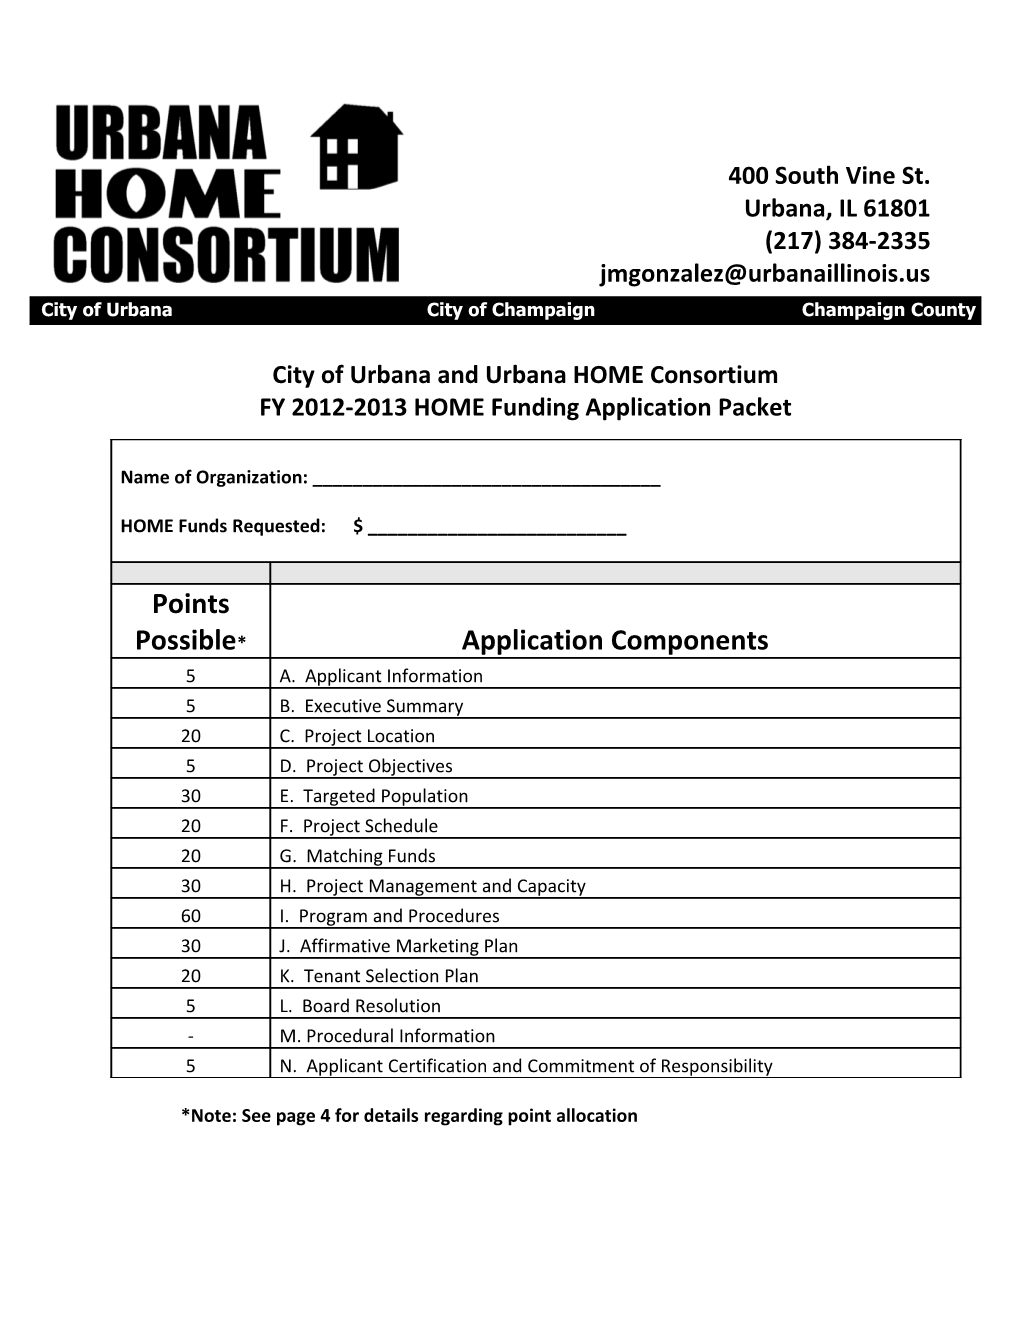 City of Urbana and Urbana HOME Consortium